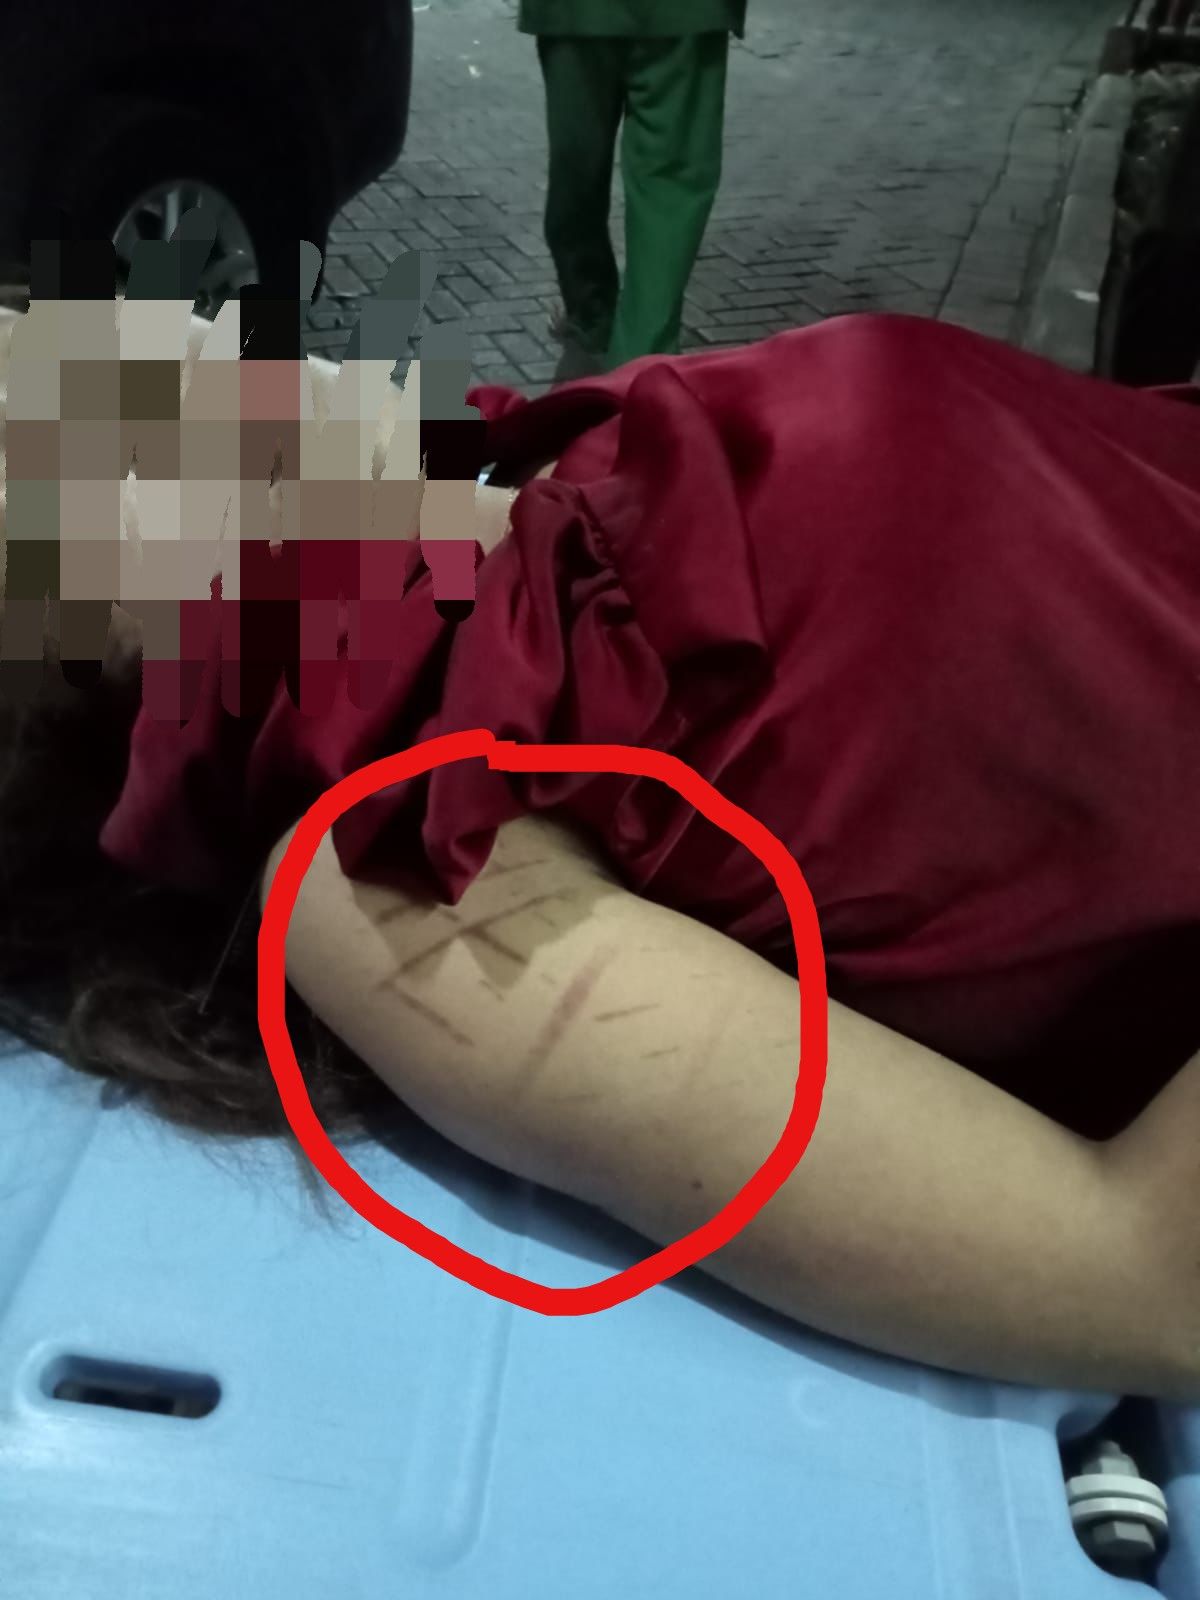 Foto diduga seleb TikTok wanita Andien berada di atas tandu, terlihat bekas seperti jejak ban di lengan kanan korban